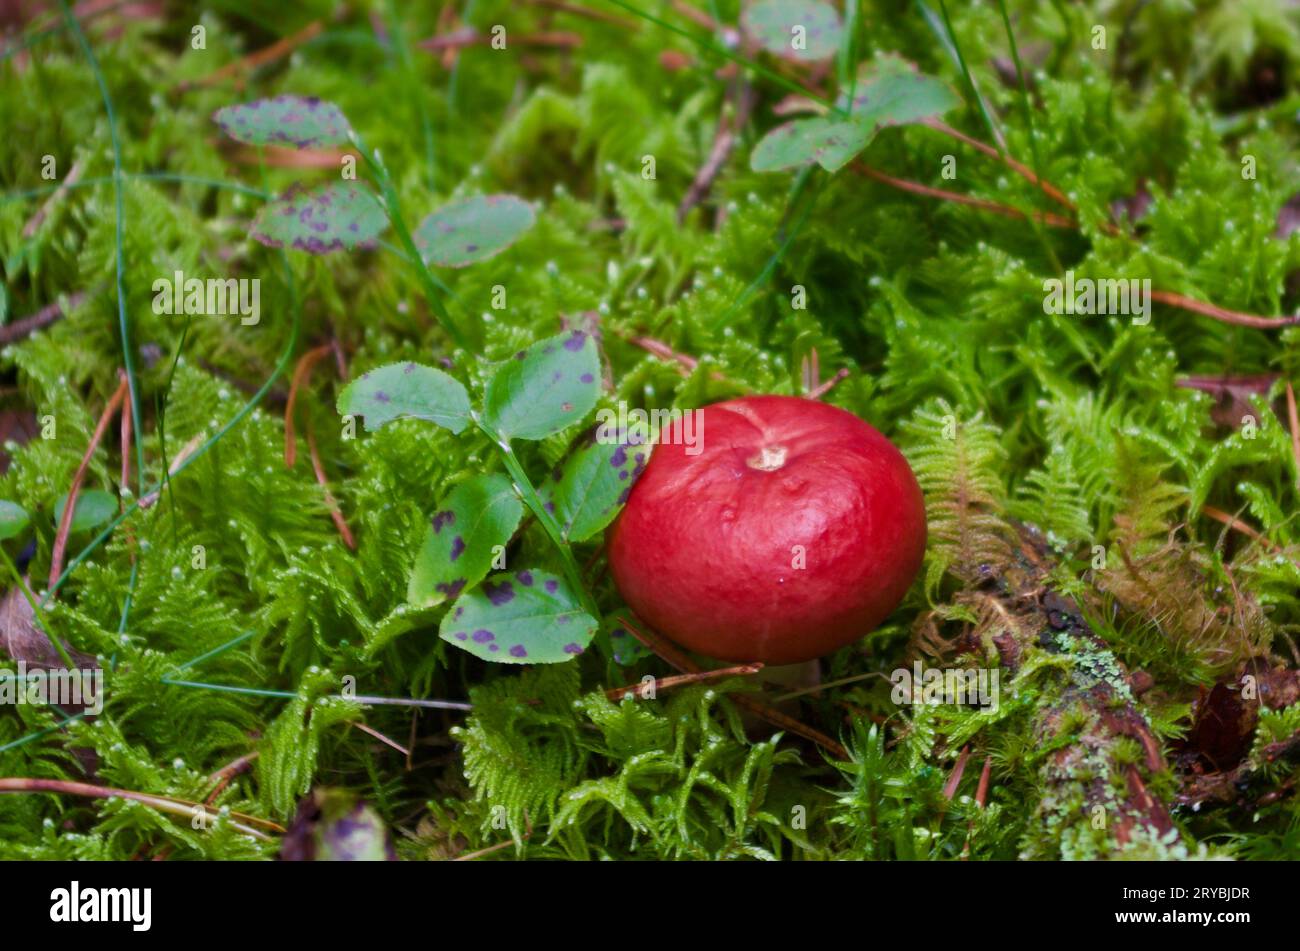 Russula-Pilz mit roter Kappe wächst im Herbst in grünem Moos mit Heidelbeerzweigen in einer Waldlandschaft. Stockfoto